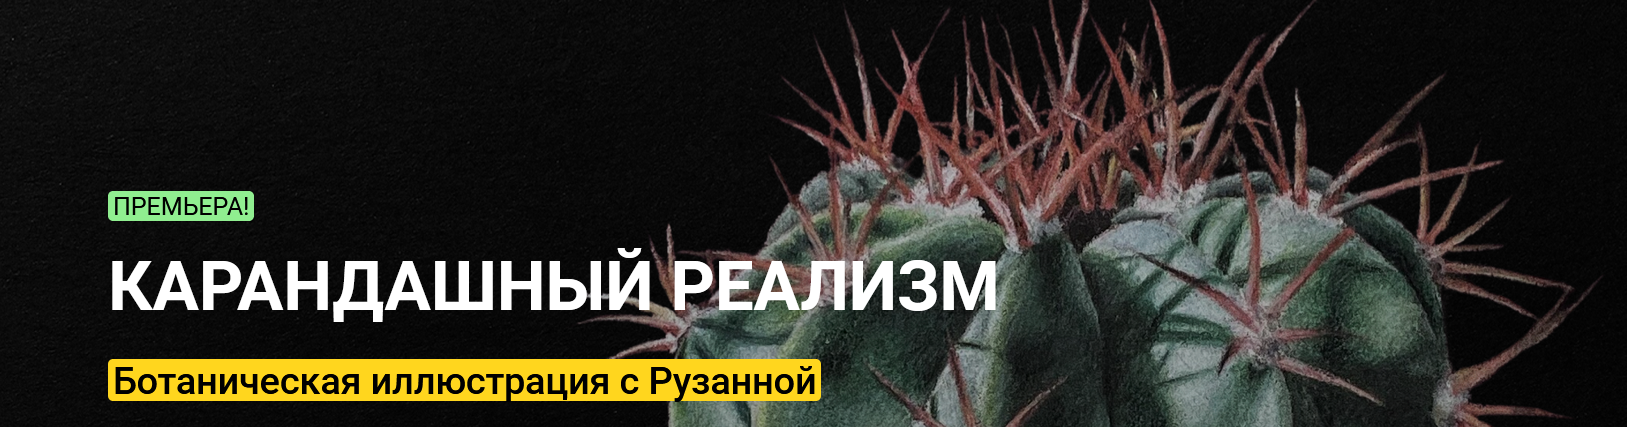 Screenshot_2021-04-06 Онлайн-курс «Карандашный реализм» ботаническая иллюстрация от Рузанны.png